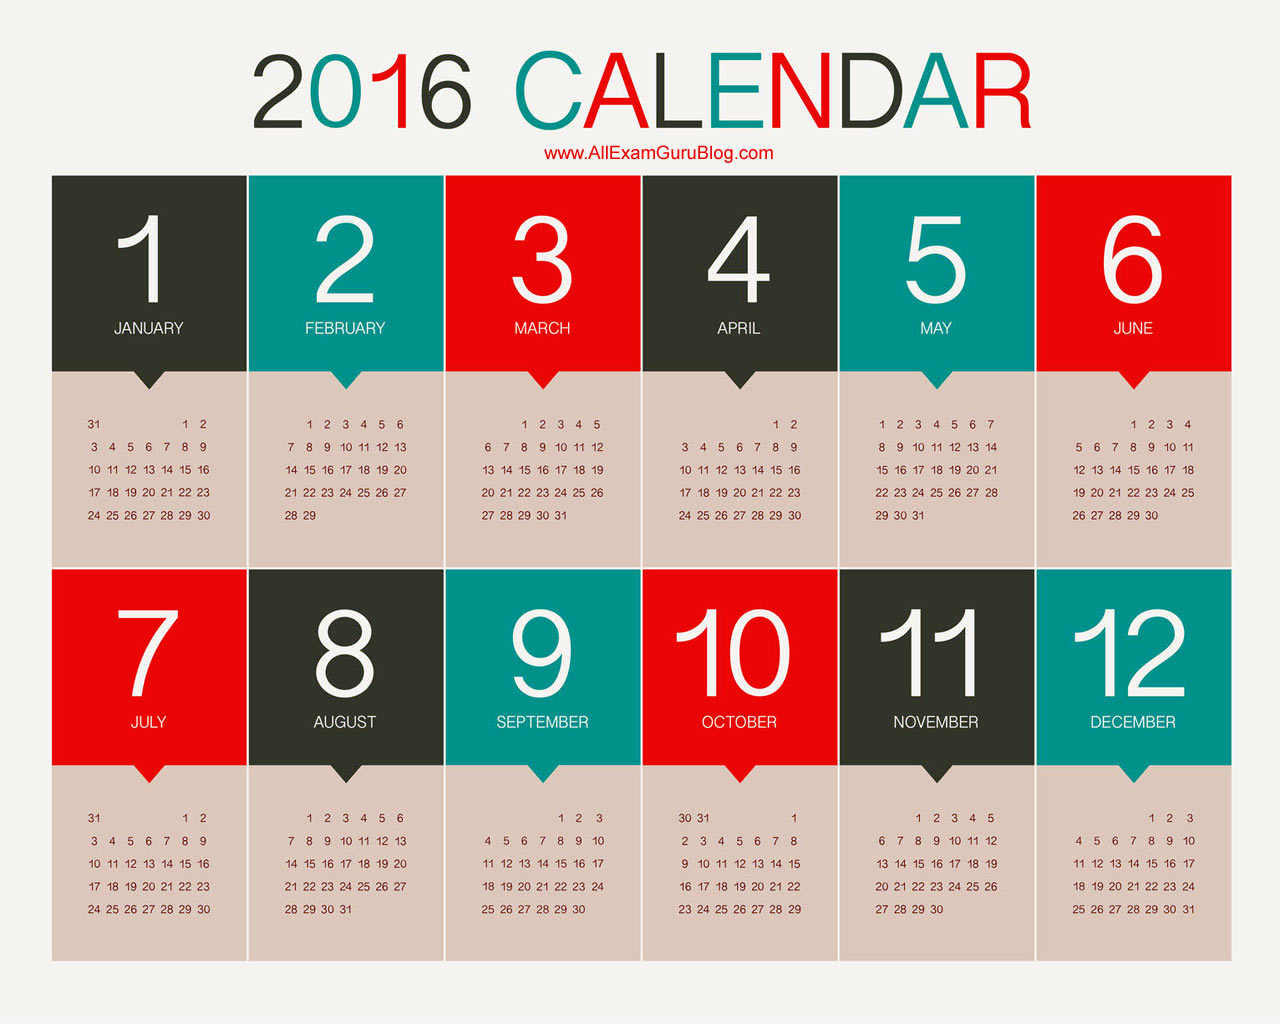 2016 Year Calendar Wallpaper Download 2016 Calendar by Month 1280x1024